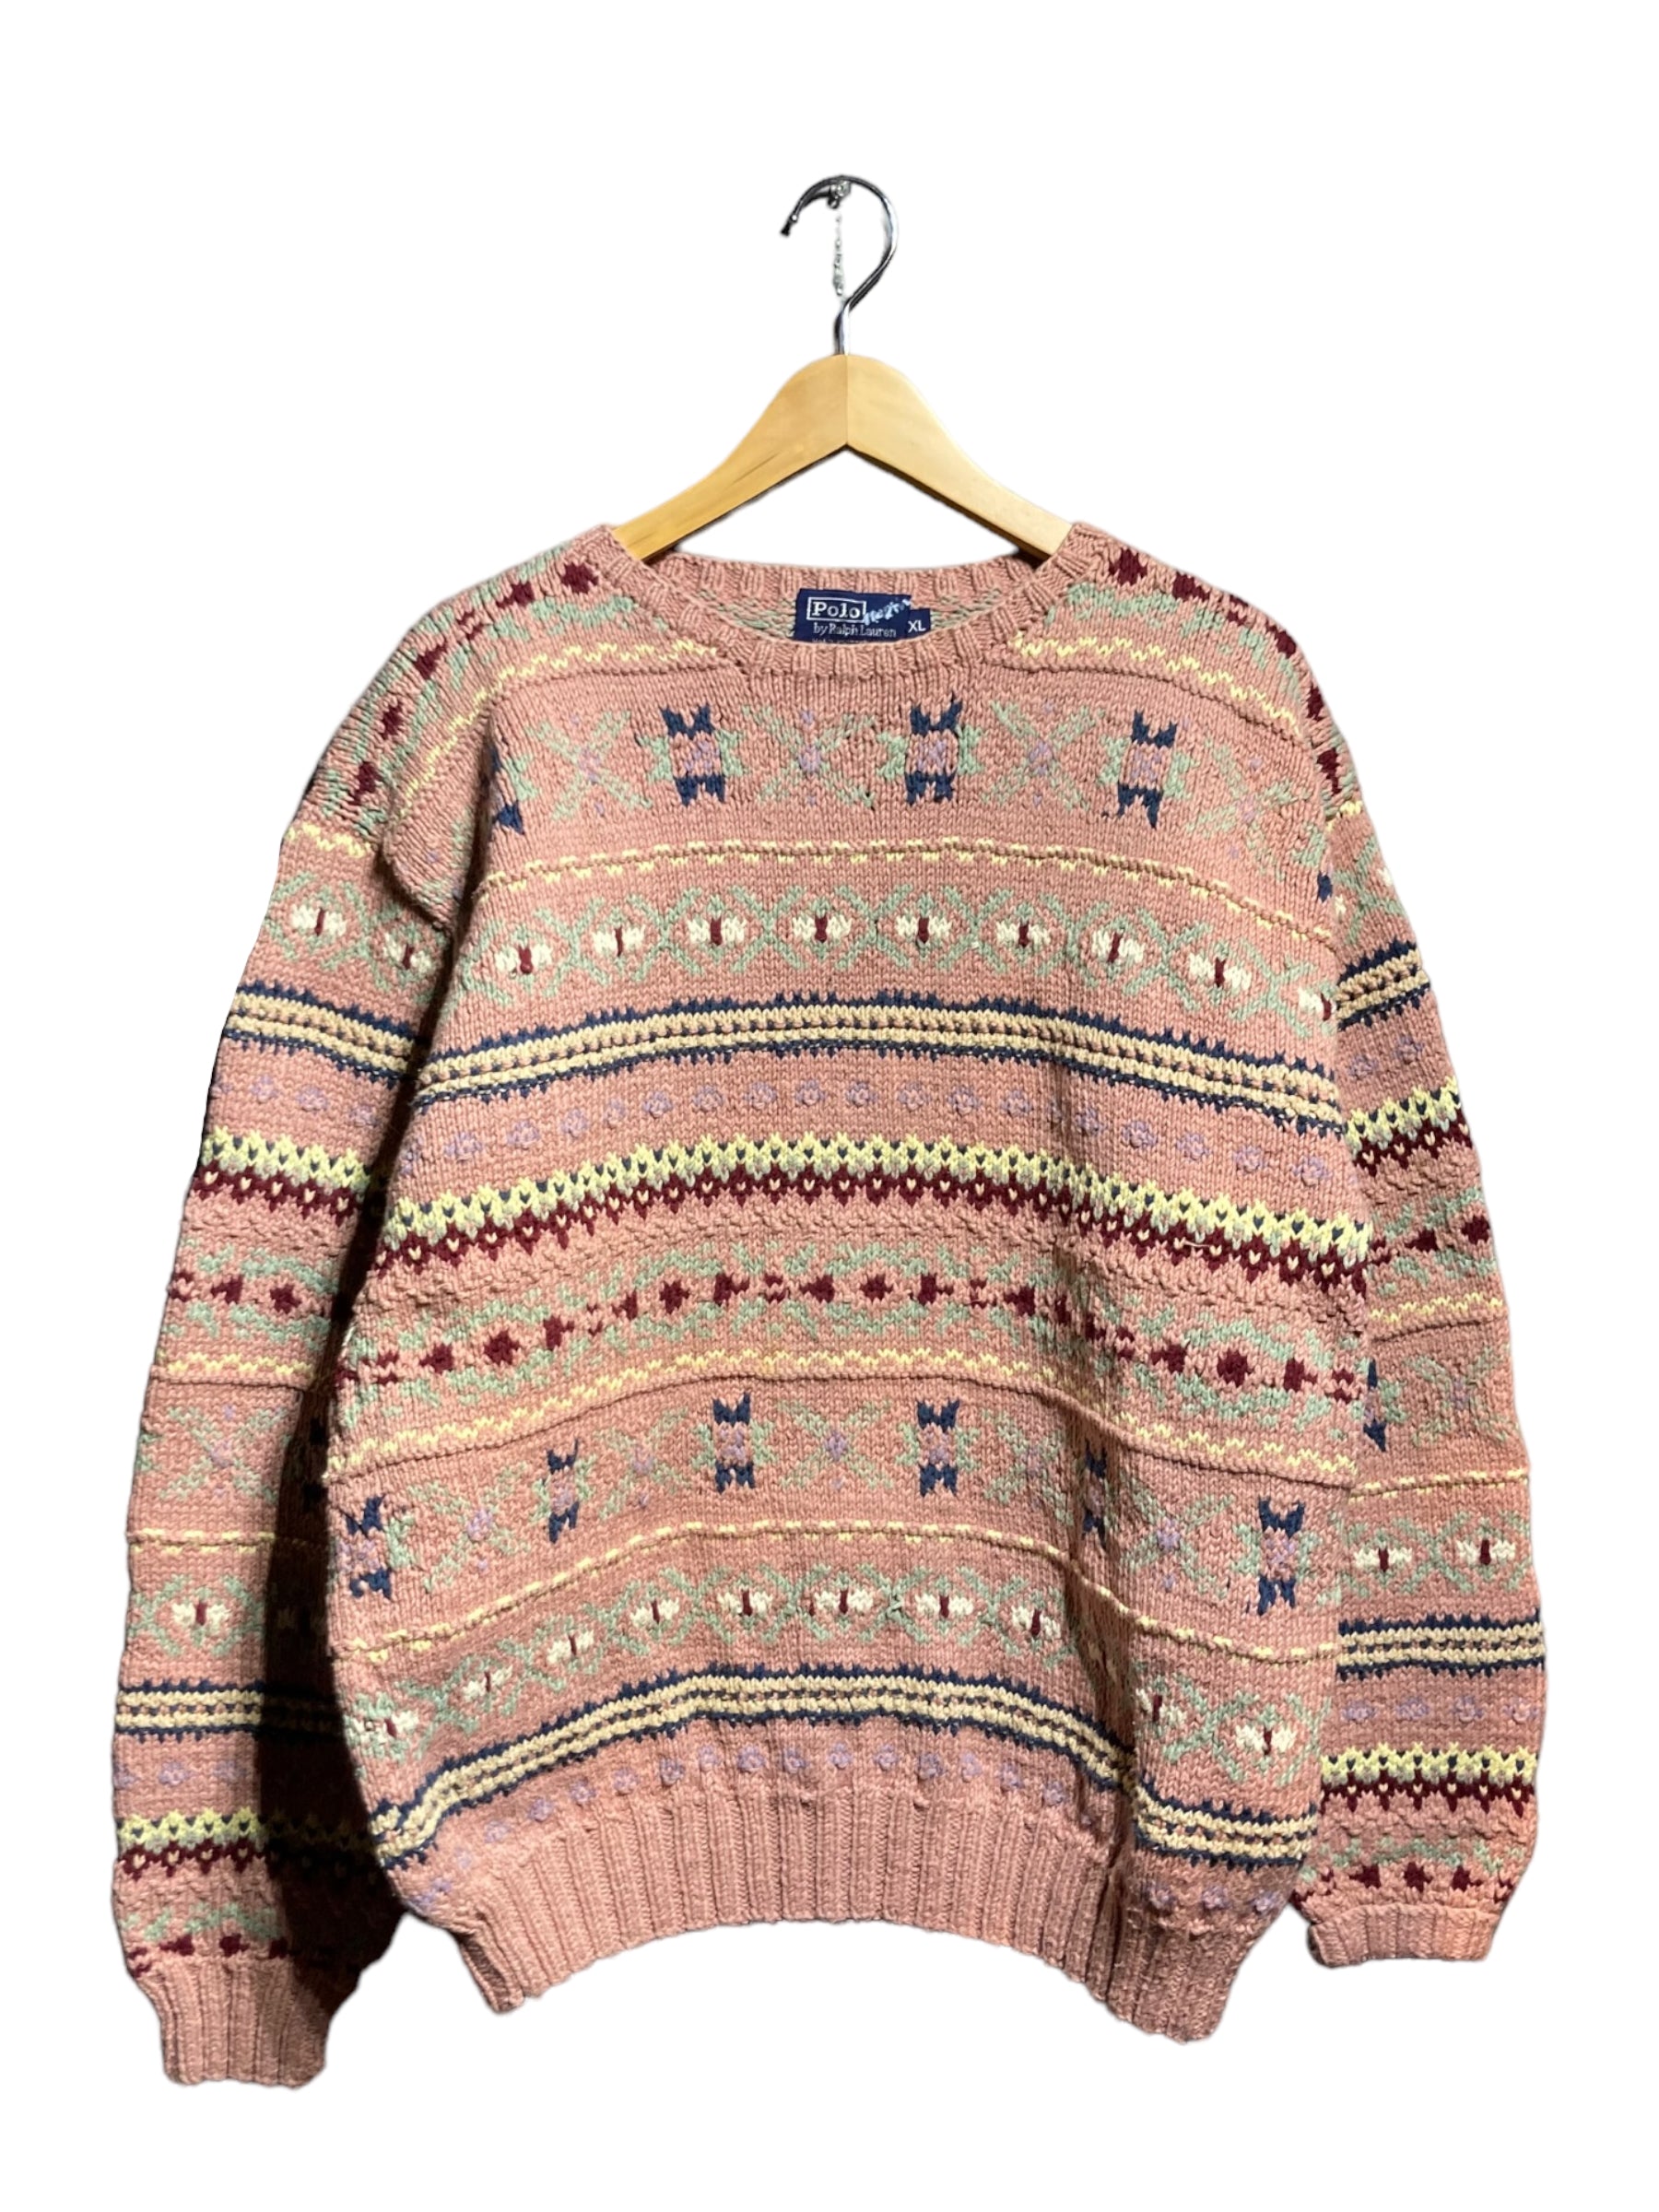 90s Polo Ralph Lauren ポロ ラルフローレン knit sweater ニット セーター デザイン